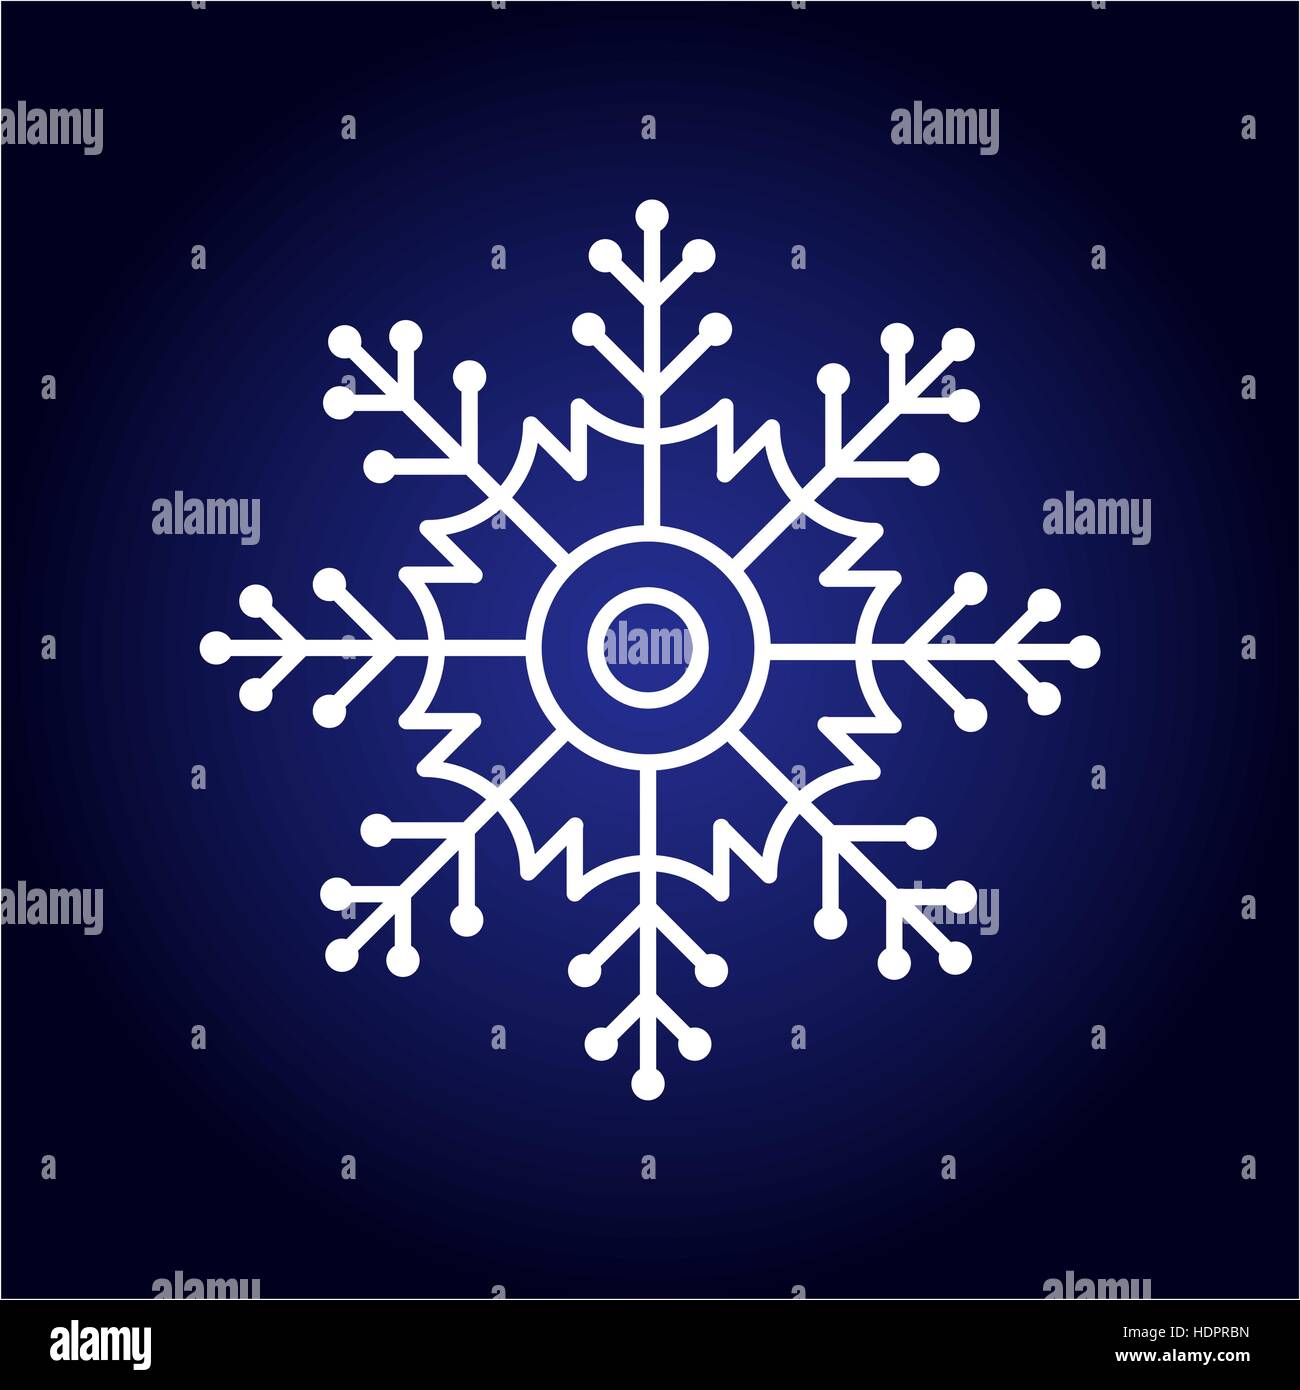 Abstract isolato di color bianco il simbolo del fiocco di neve su sfondo blu. Inverno freddo pattern. Nevoso elemento di arredamento per le vacanze di Natale. Illustrazione Vettoriale